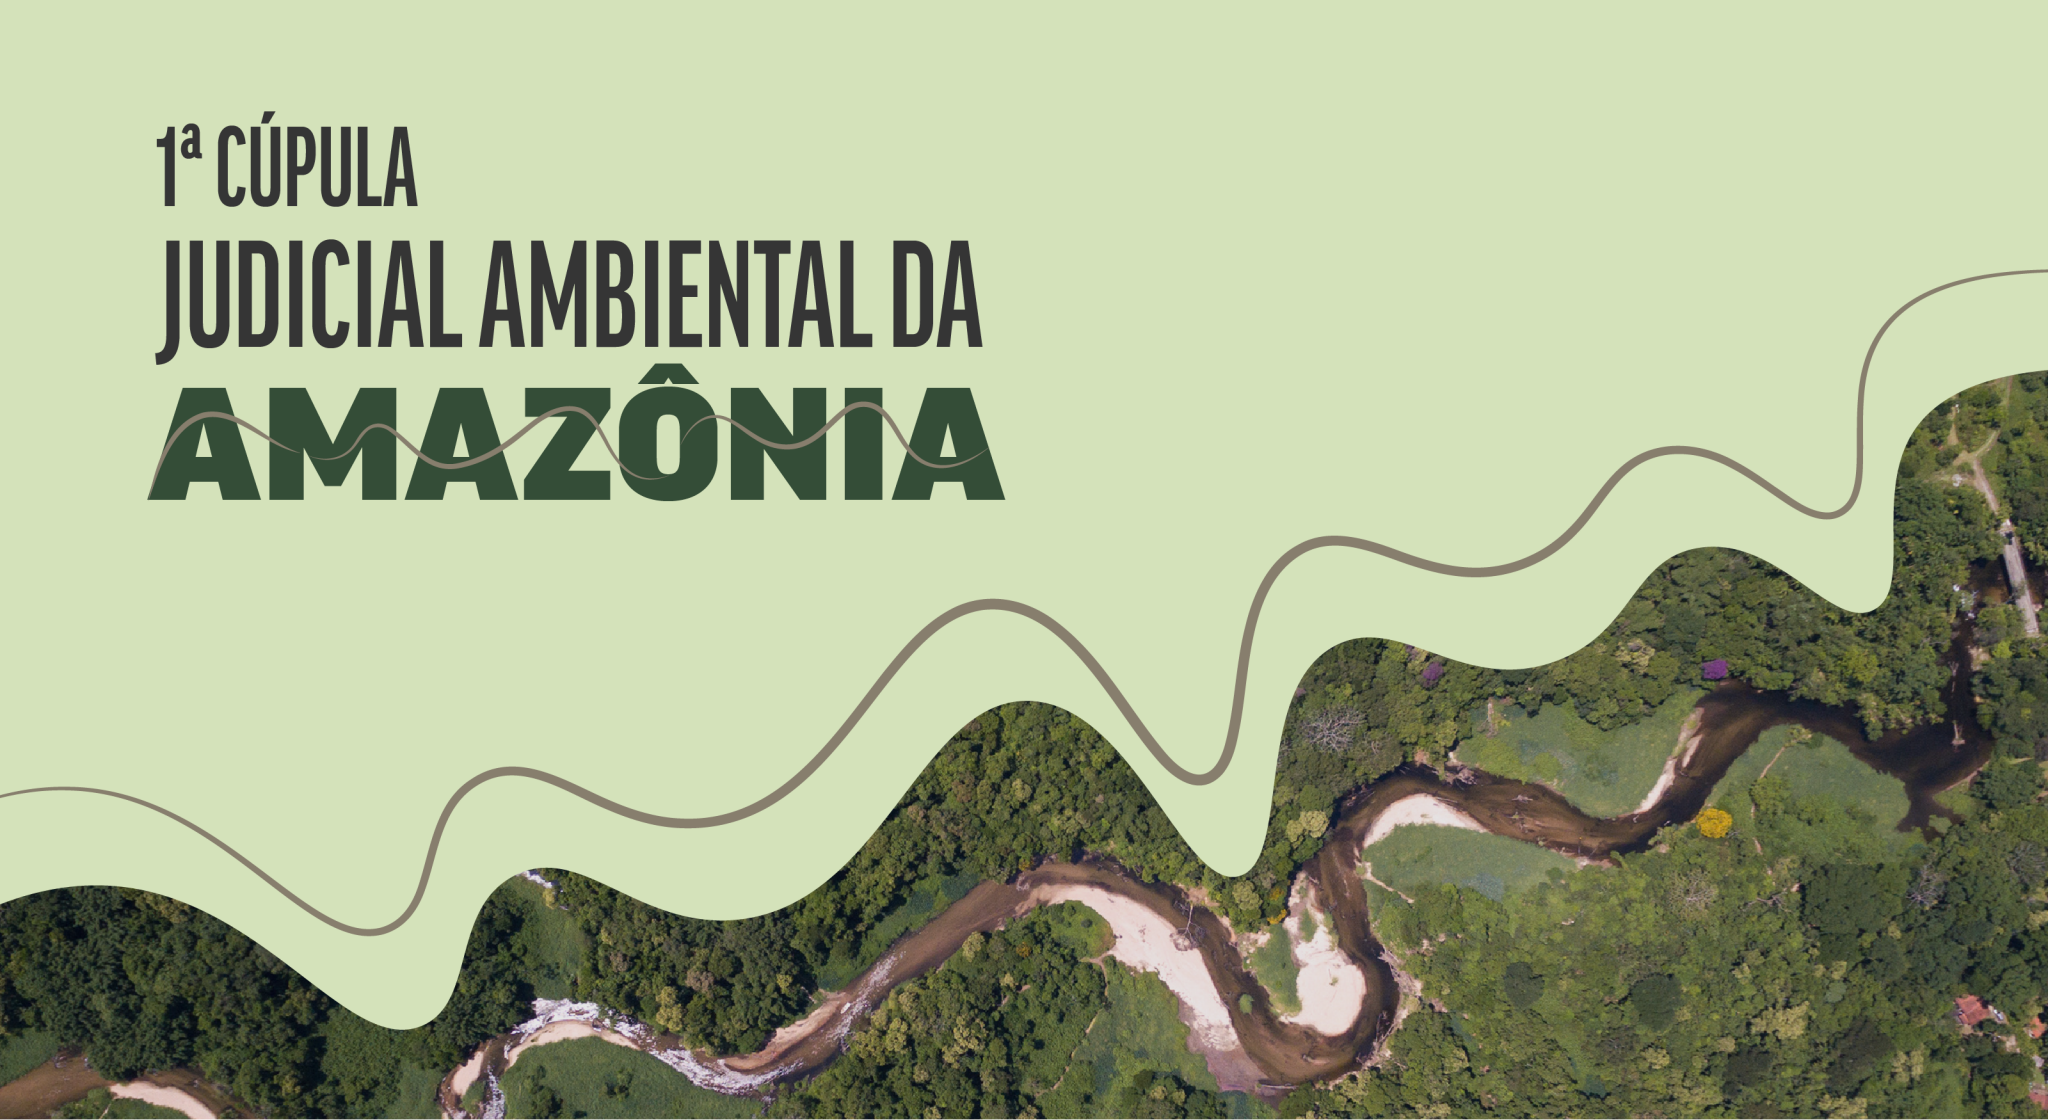 INSTITUCIONAL: Começa hoje a 1ª Cúpula Judicial Ambiental para debater atuação judicial na Amazônia